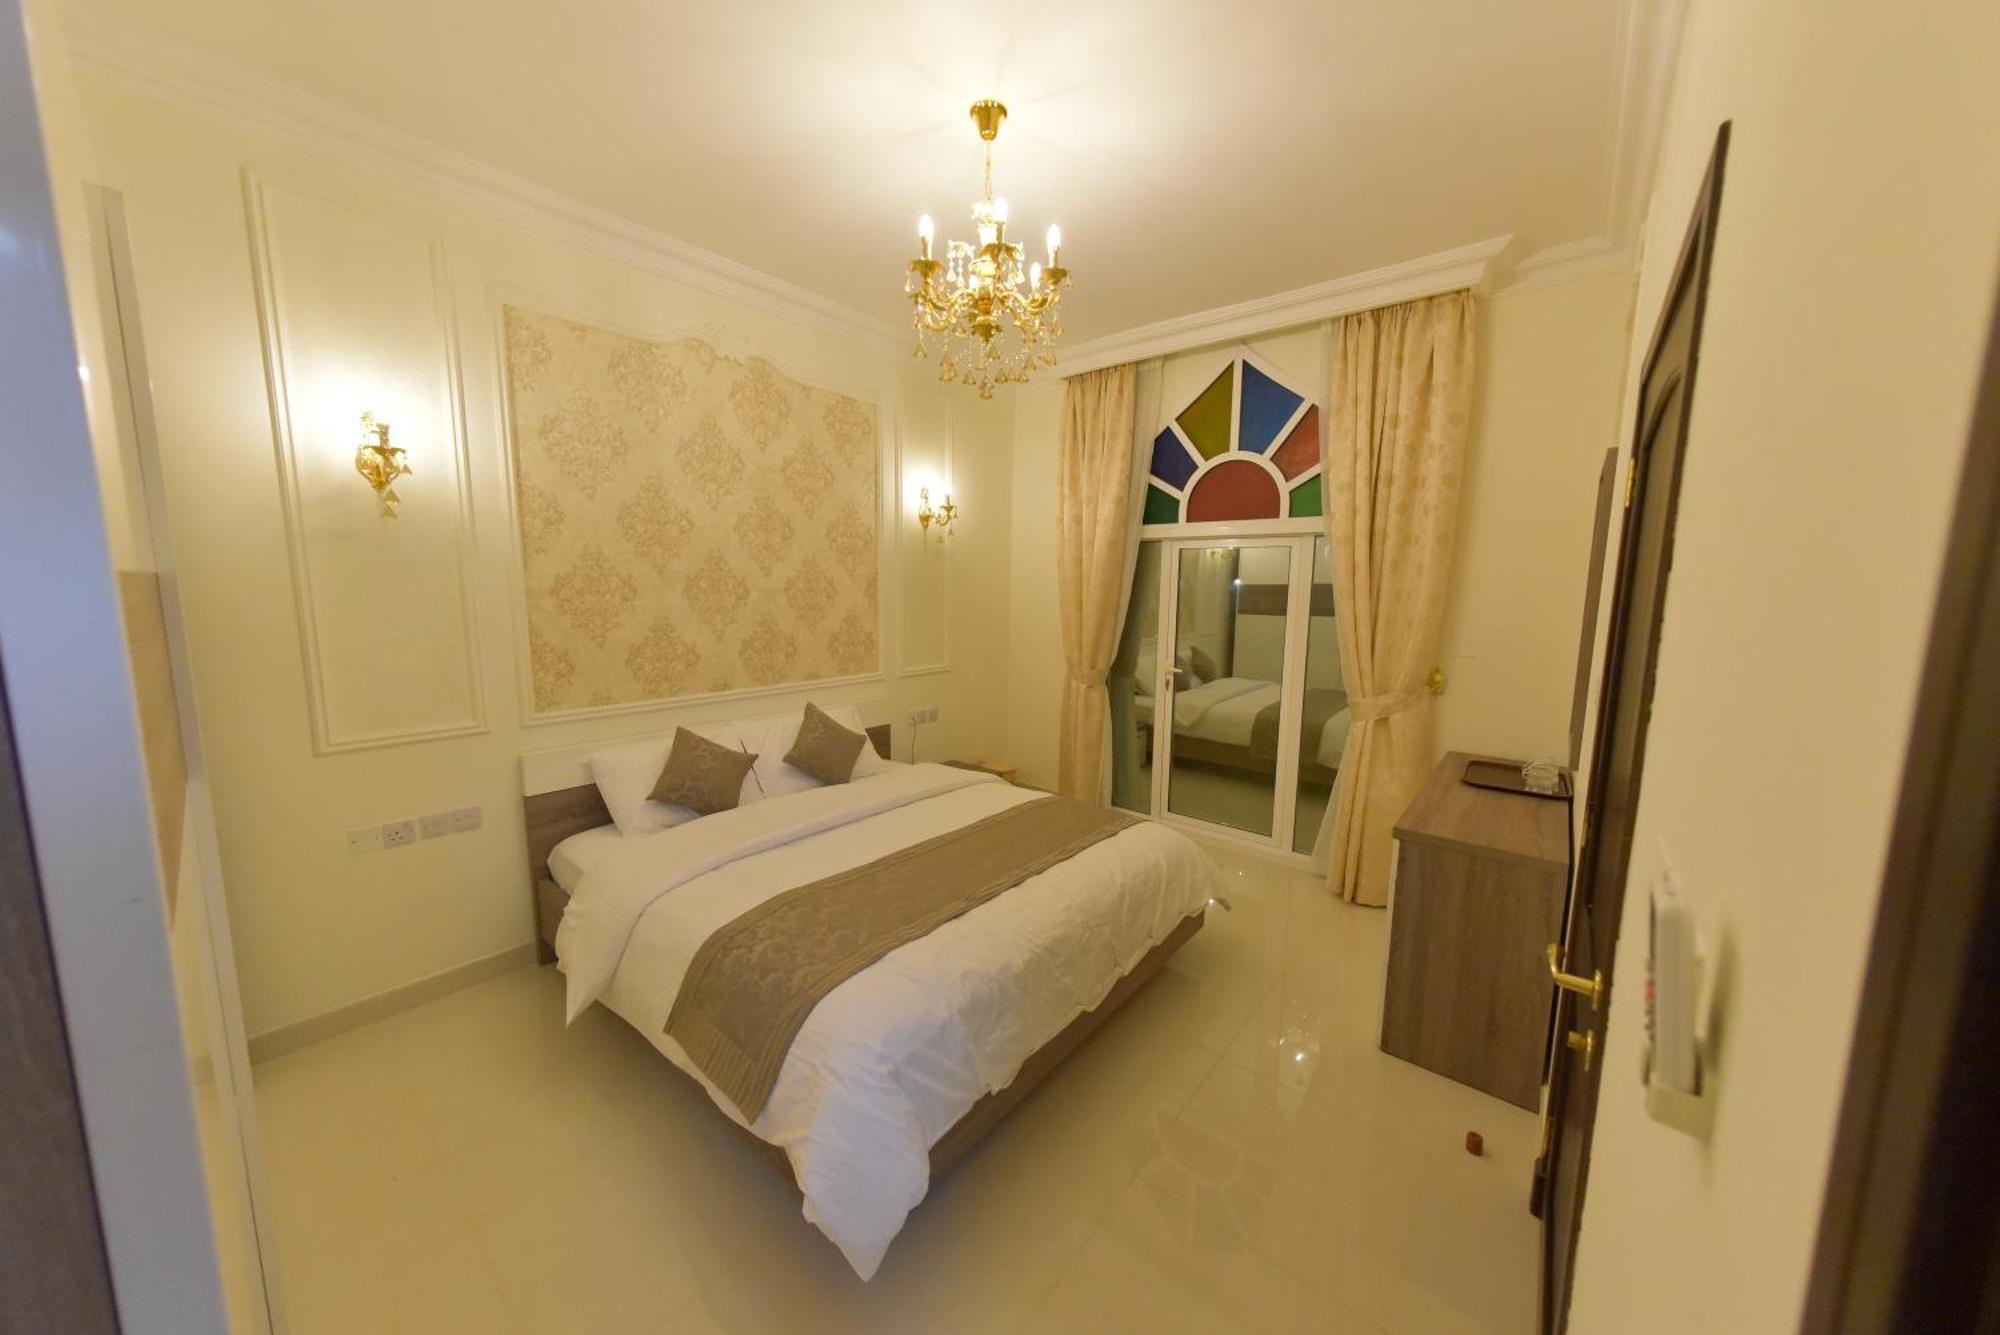 מוסקט A'Sinamar Hotel Apartment מראה חיצוני תמונה